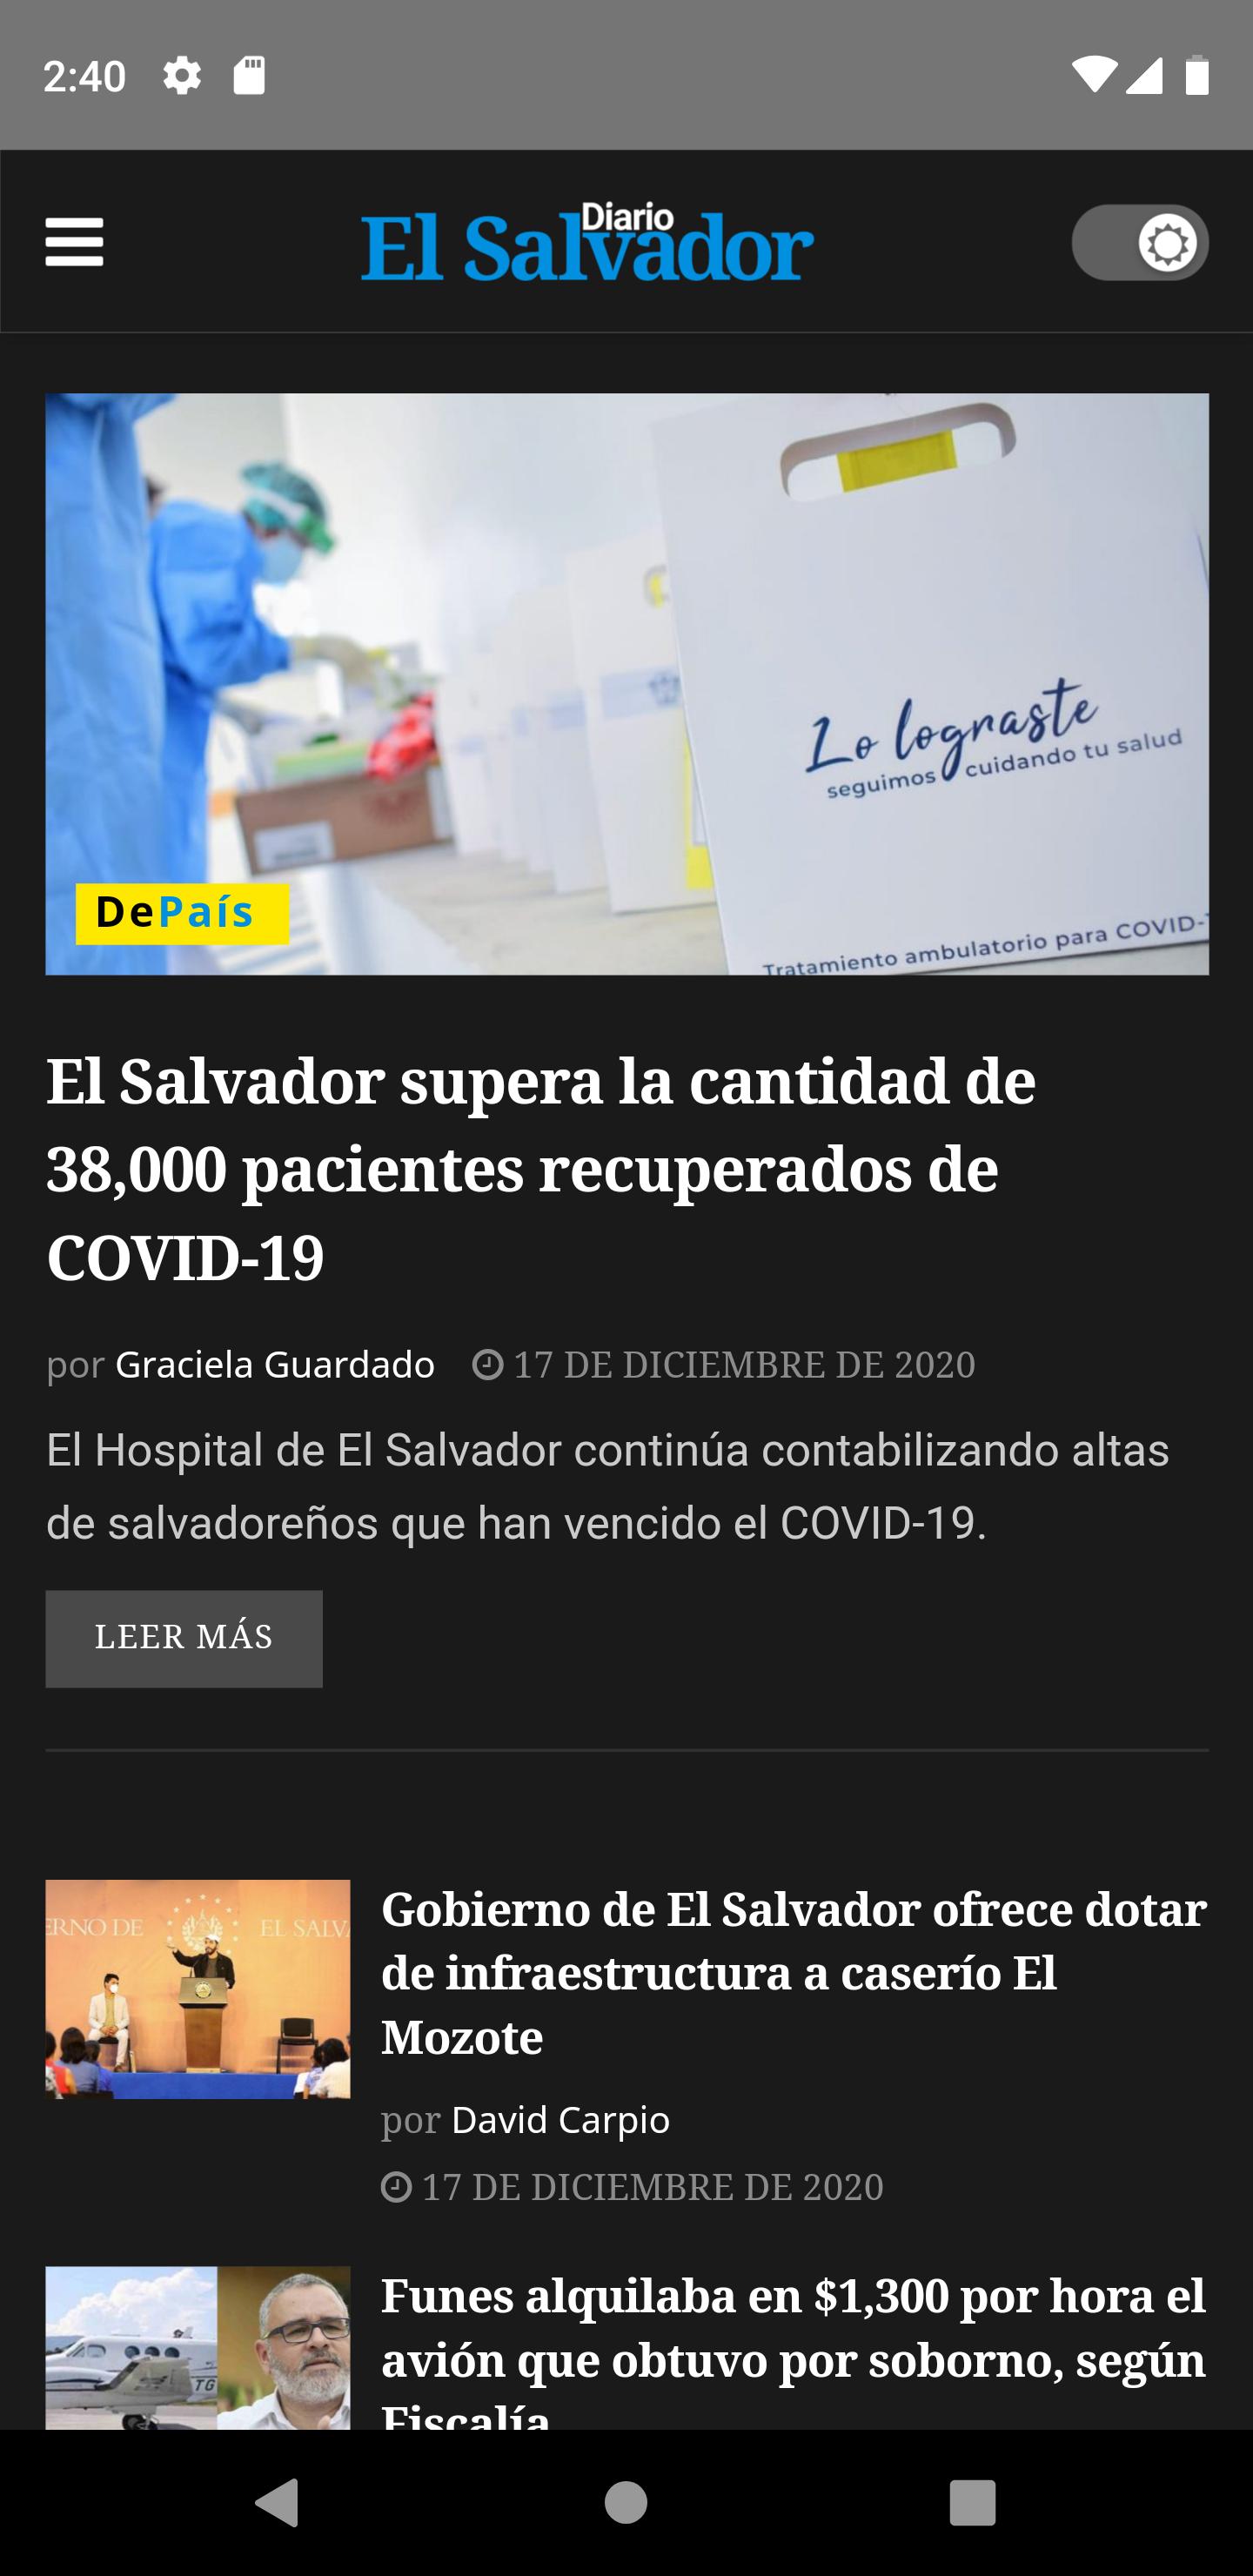 Diario El Salvador for Android - APK Download